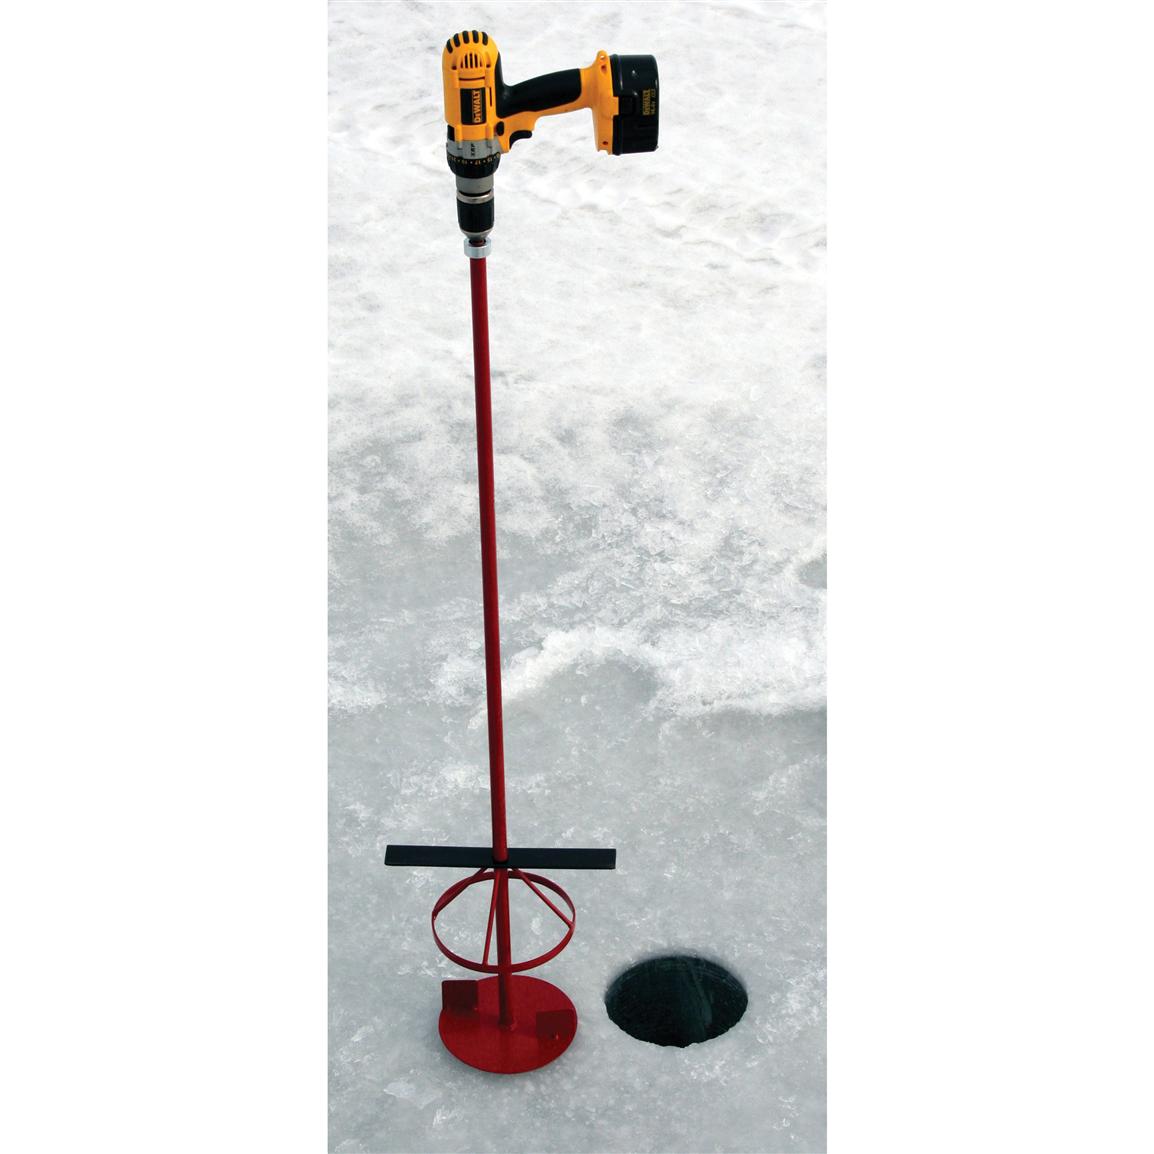 StrikeMaster® Slushmaster 135246, Ice Fishing Gear at